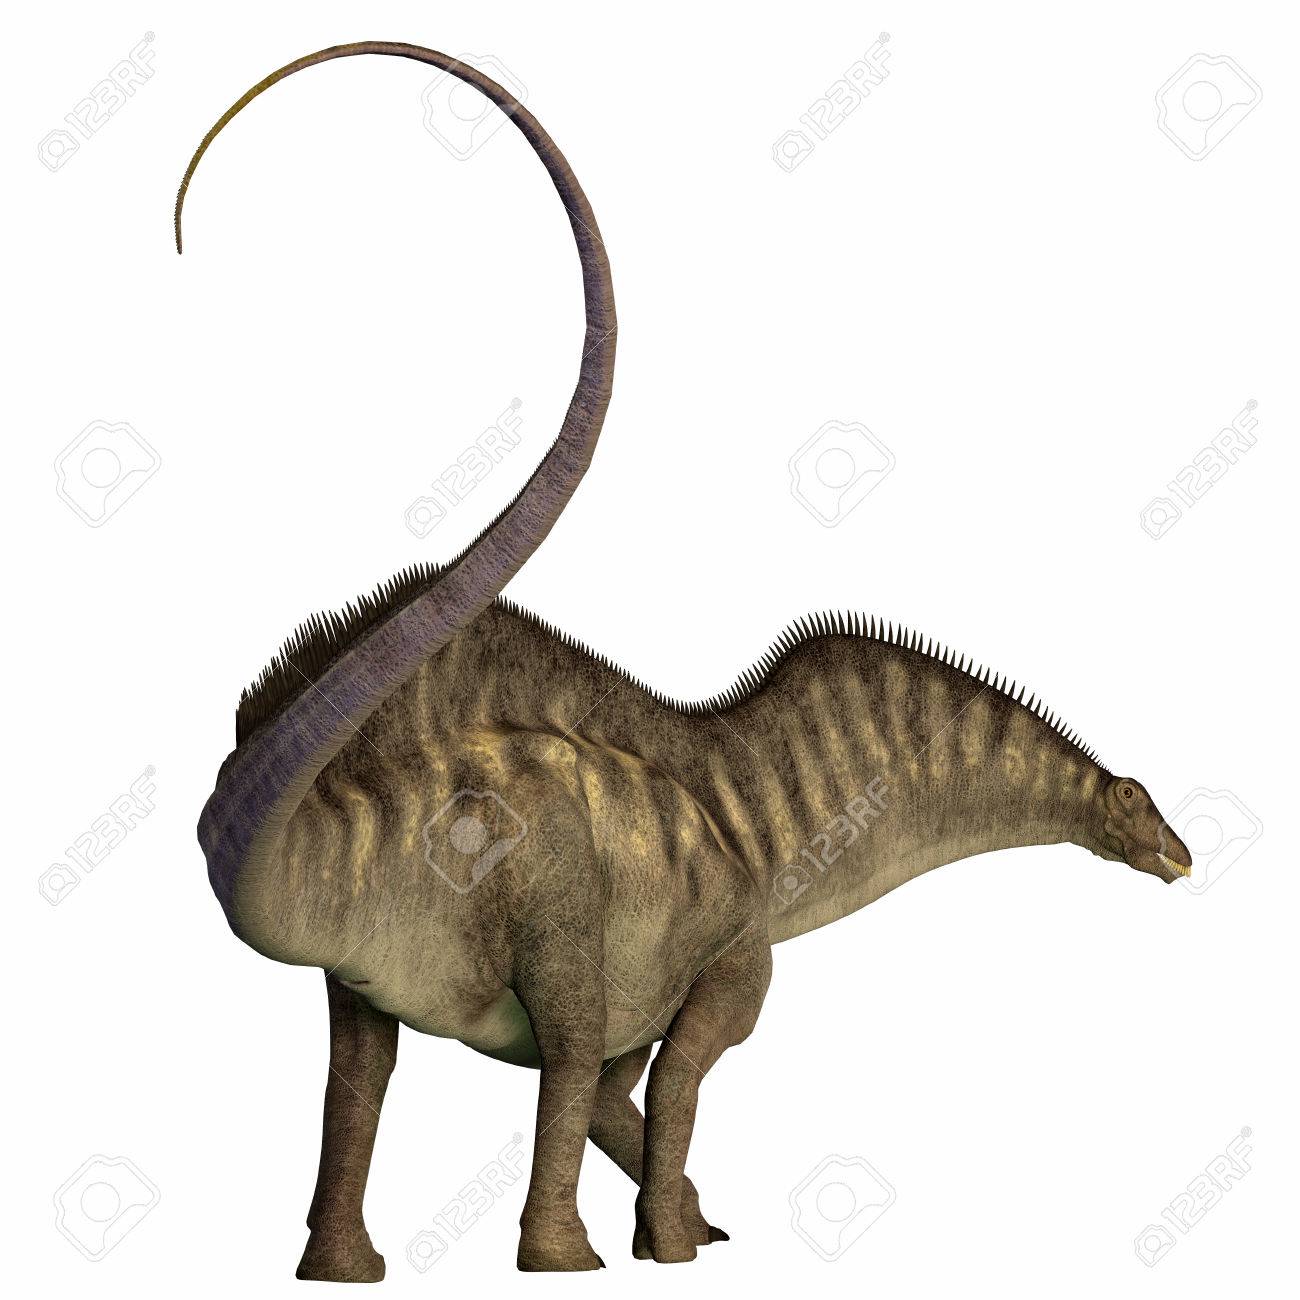 46402656-amargasaurus-dinosaur-tail-amargasaurus-was-a-herbivorous-sauropod-dinosaur-that-live...jpg